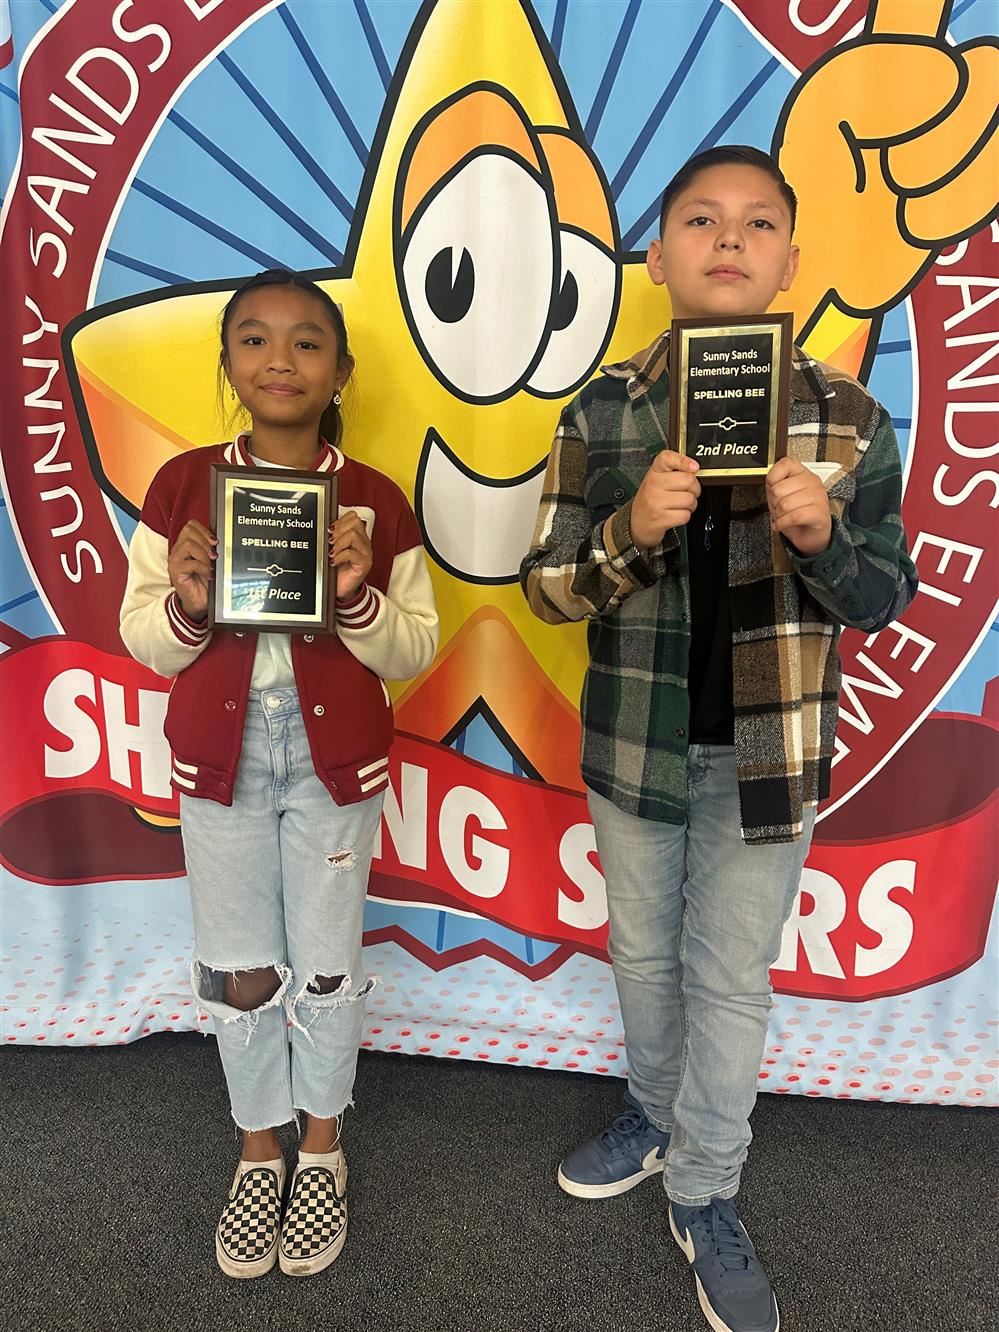  Spelling Bee winners